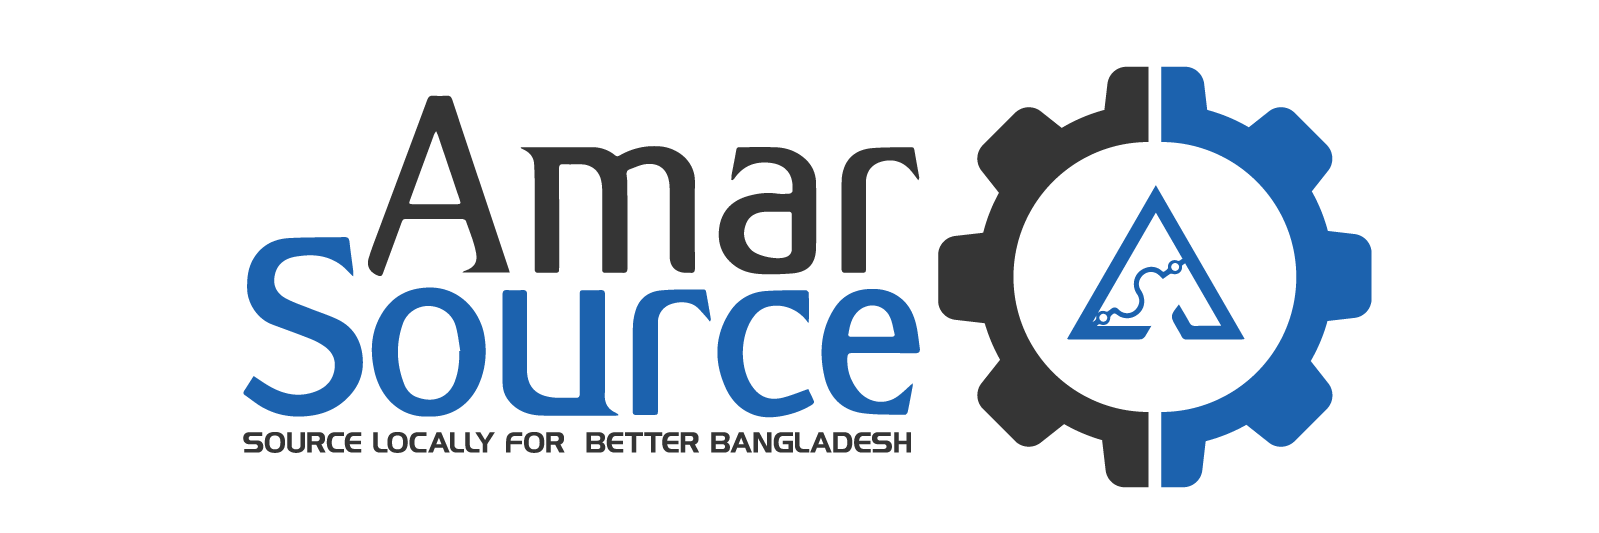 AmarSource Ltd.